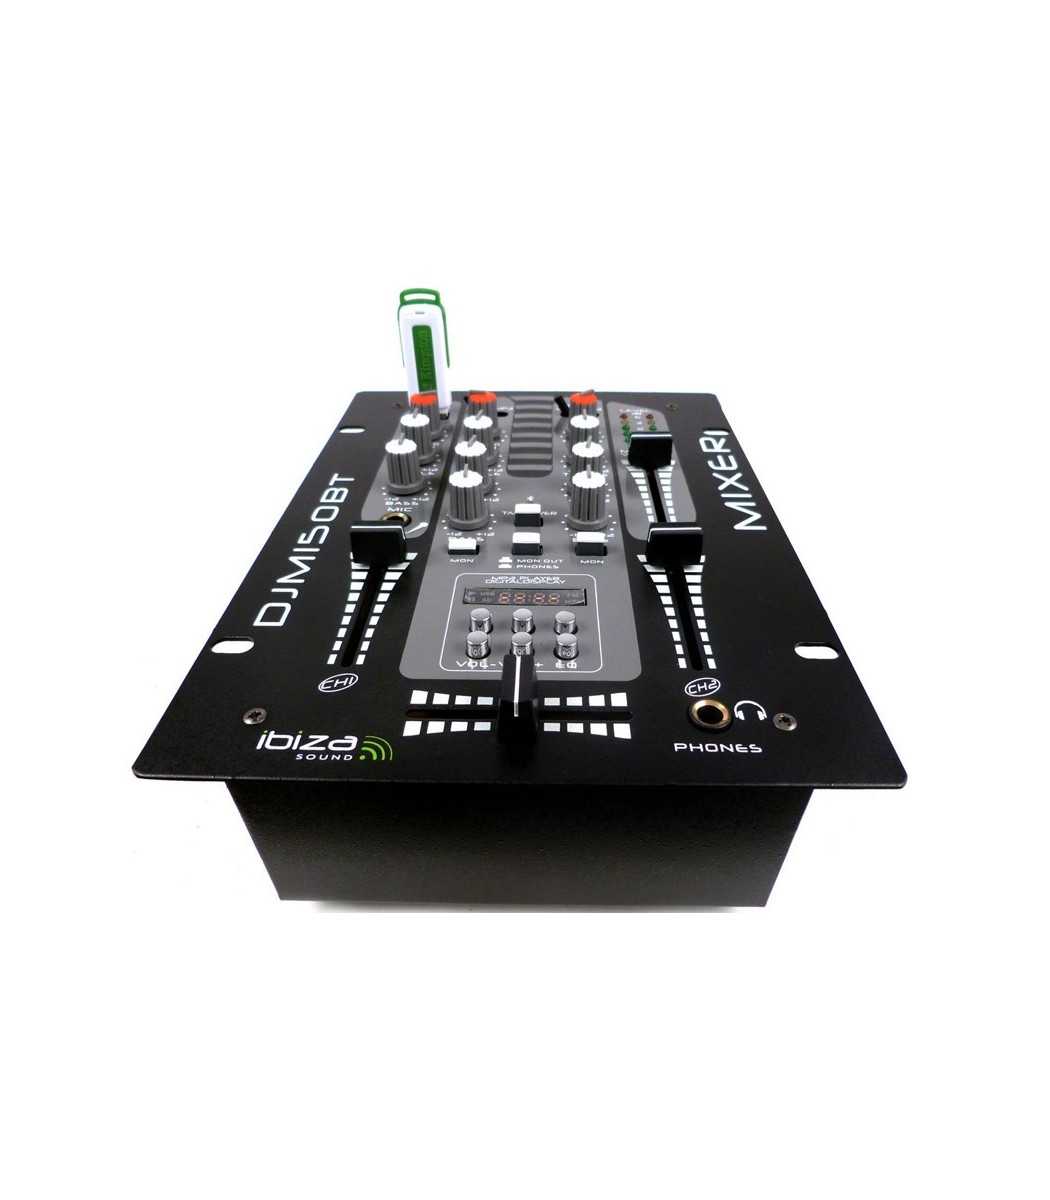 Ibiza djm150usb-bt 5 canaux Table de mixage avec usb-mp3, Bluetooth